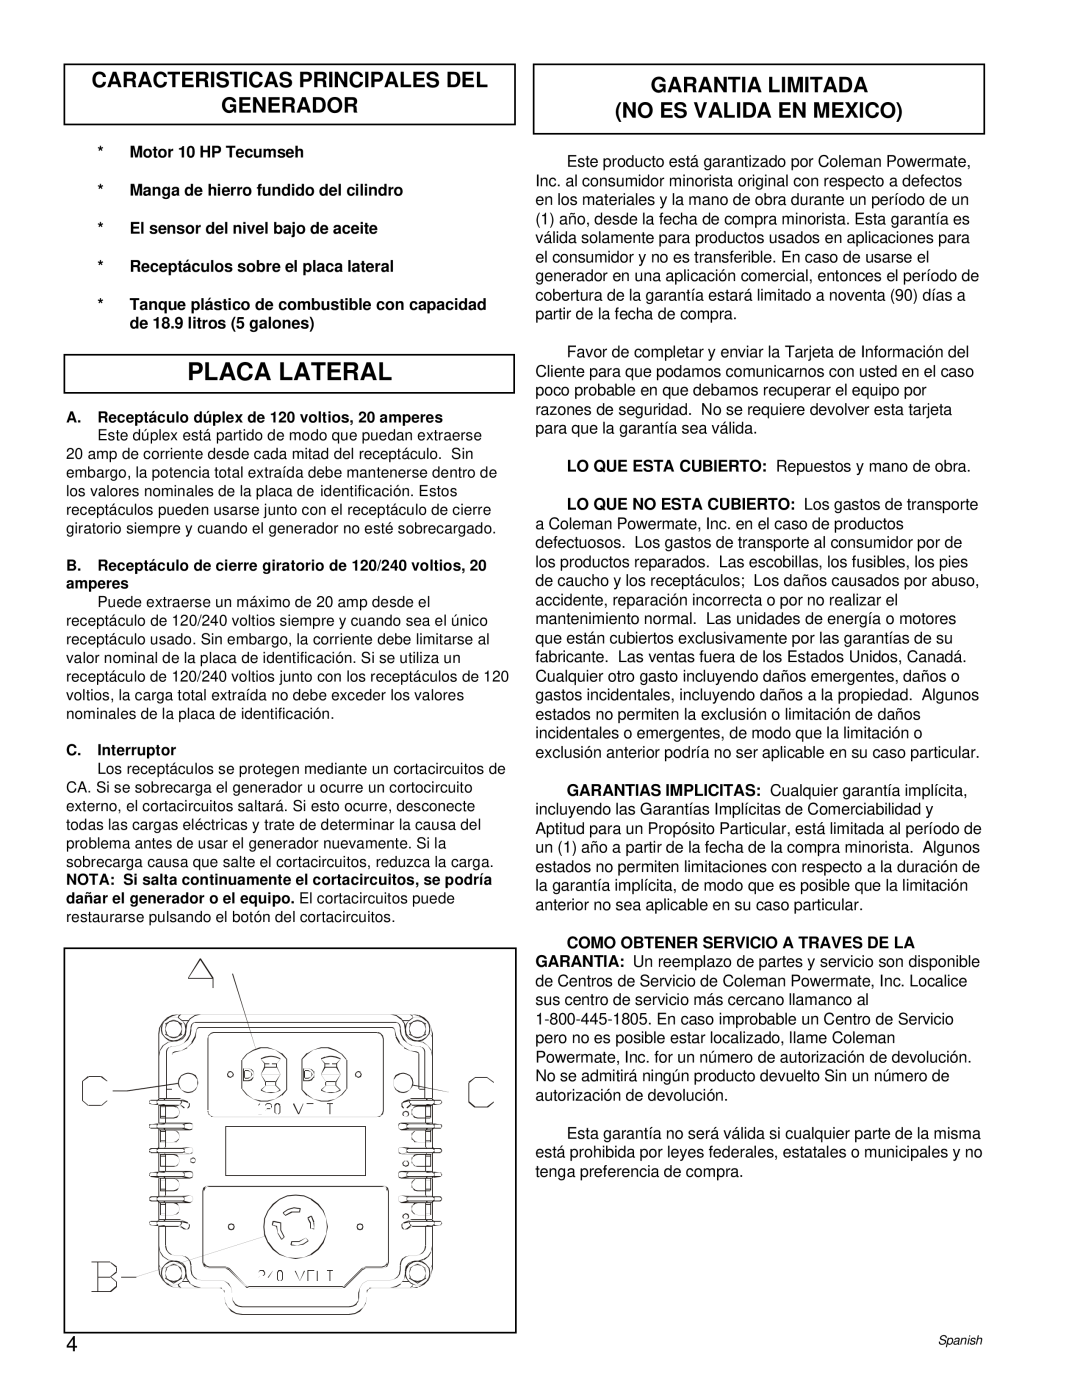 Powermate PM0525202.02 Placa Lateral, Caracteristicas Principales Del Generador, Garantia Limitada No Es Valida En Mexico 